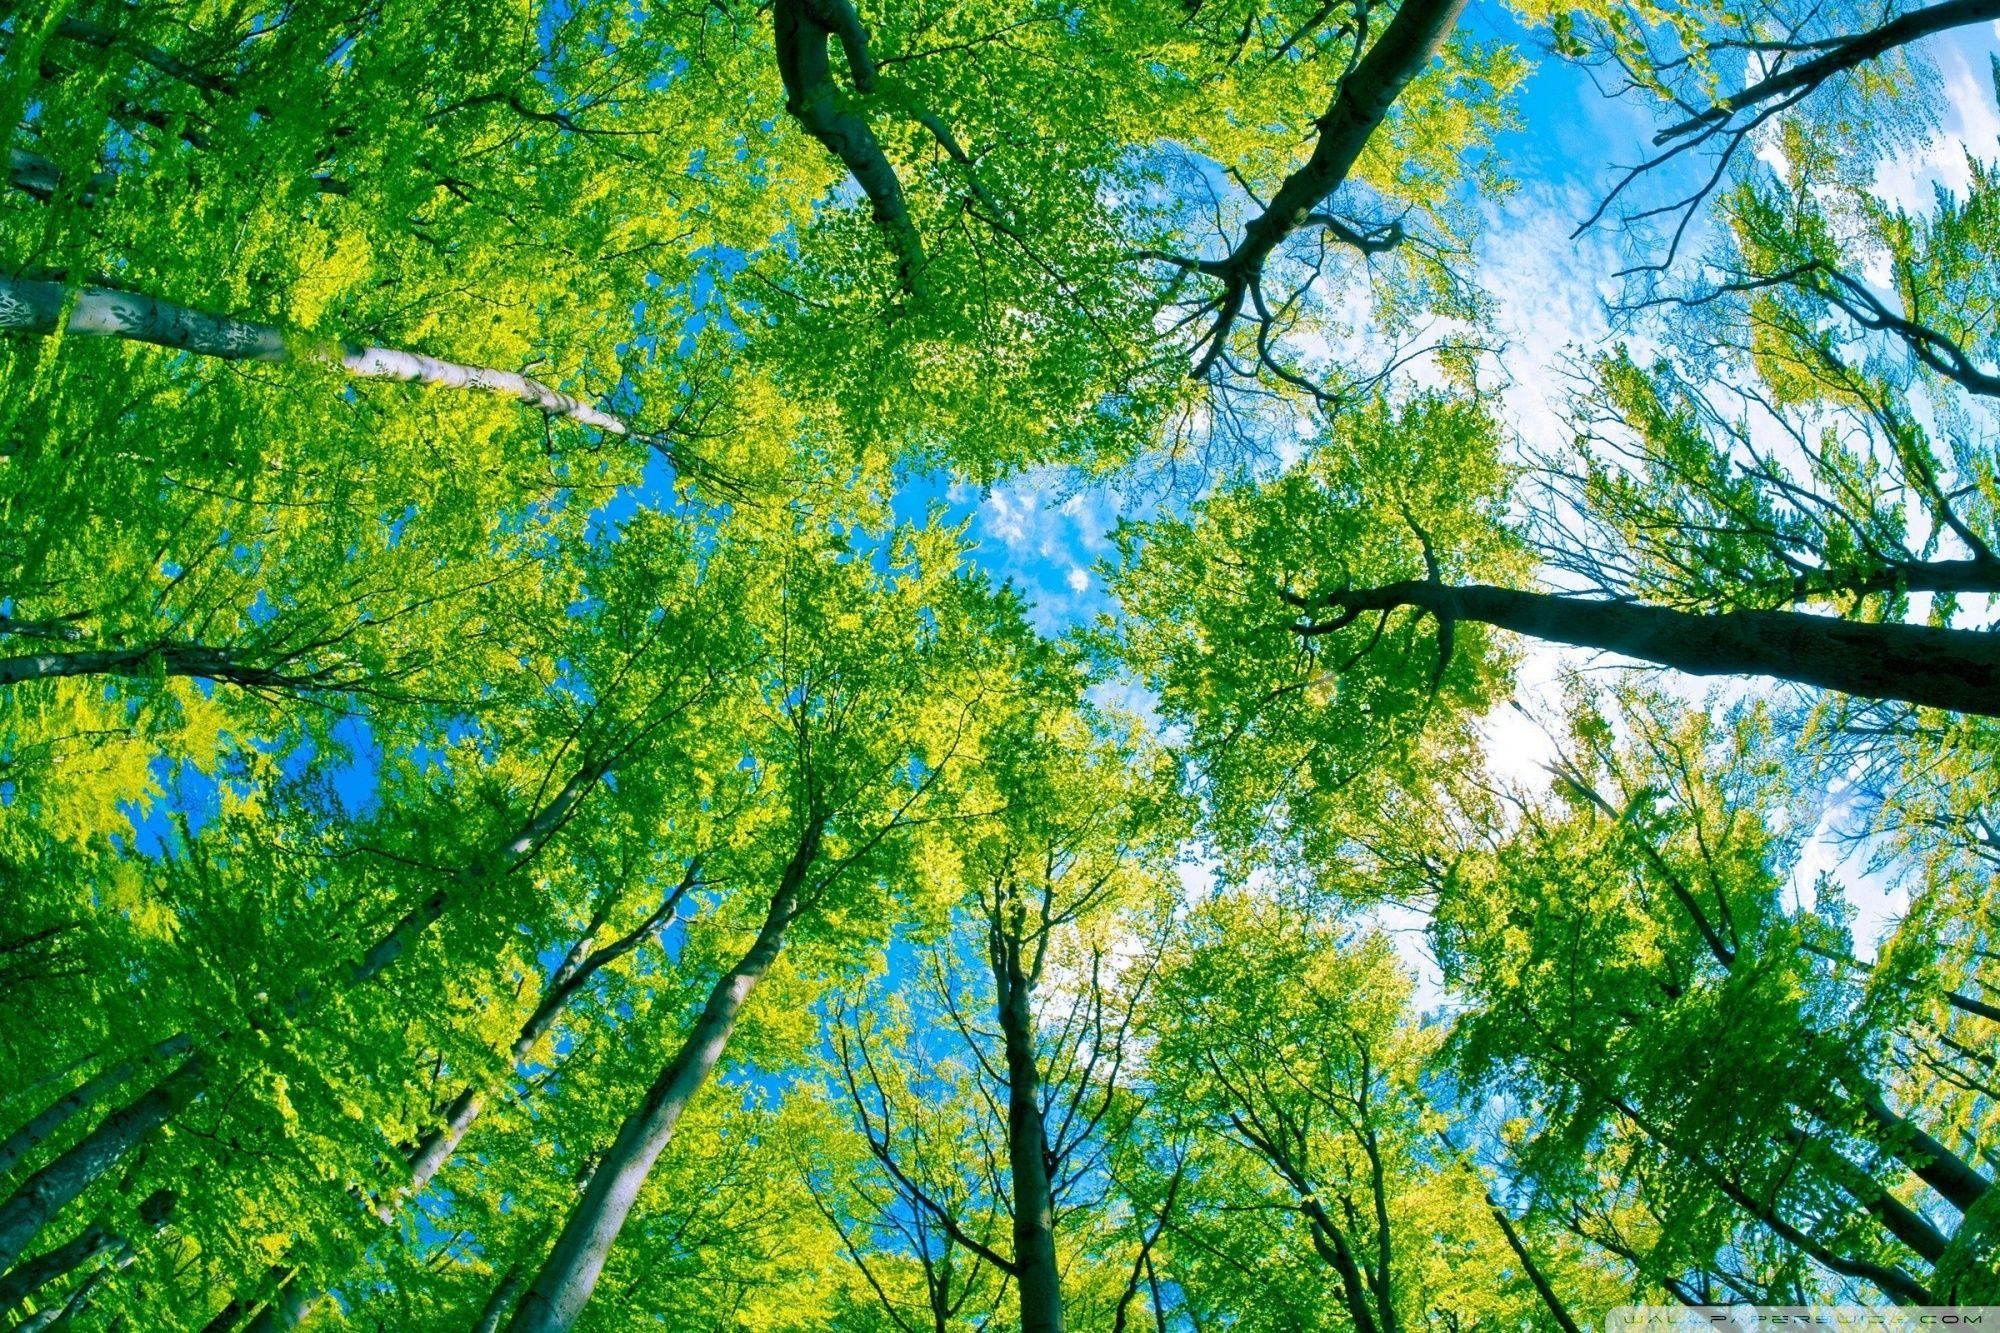 Hình nền cây tre rừng trúc tuyệt đẹp cho máy tính  VFOVN